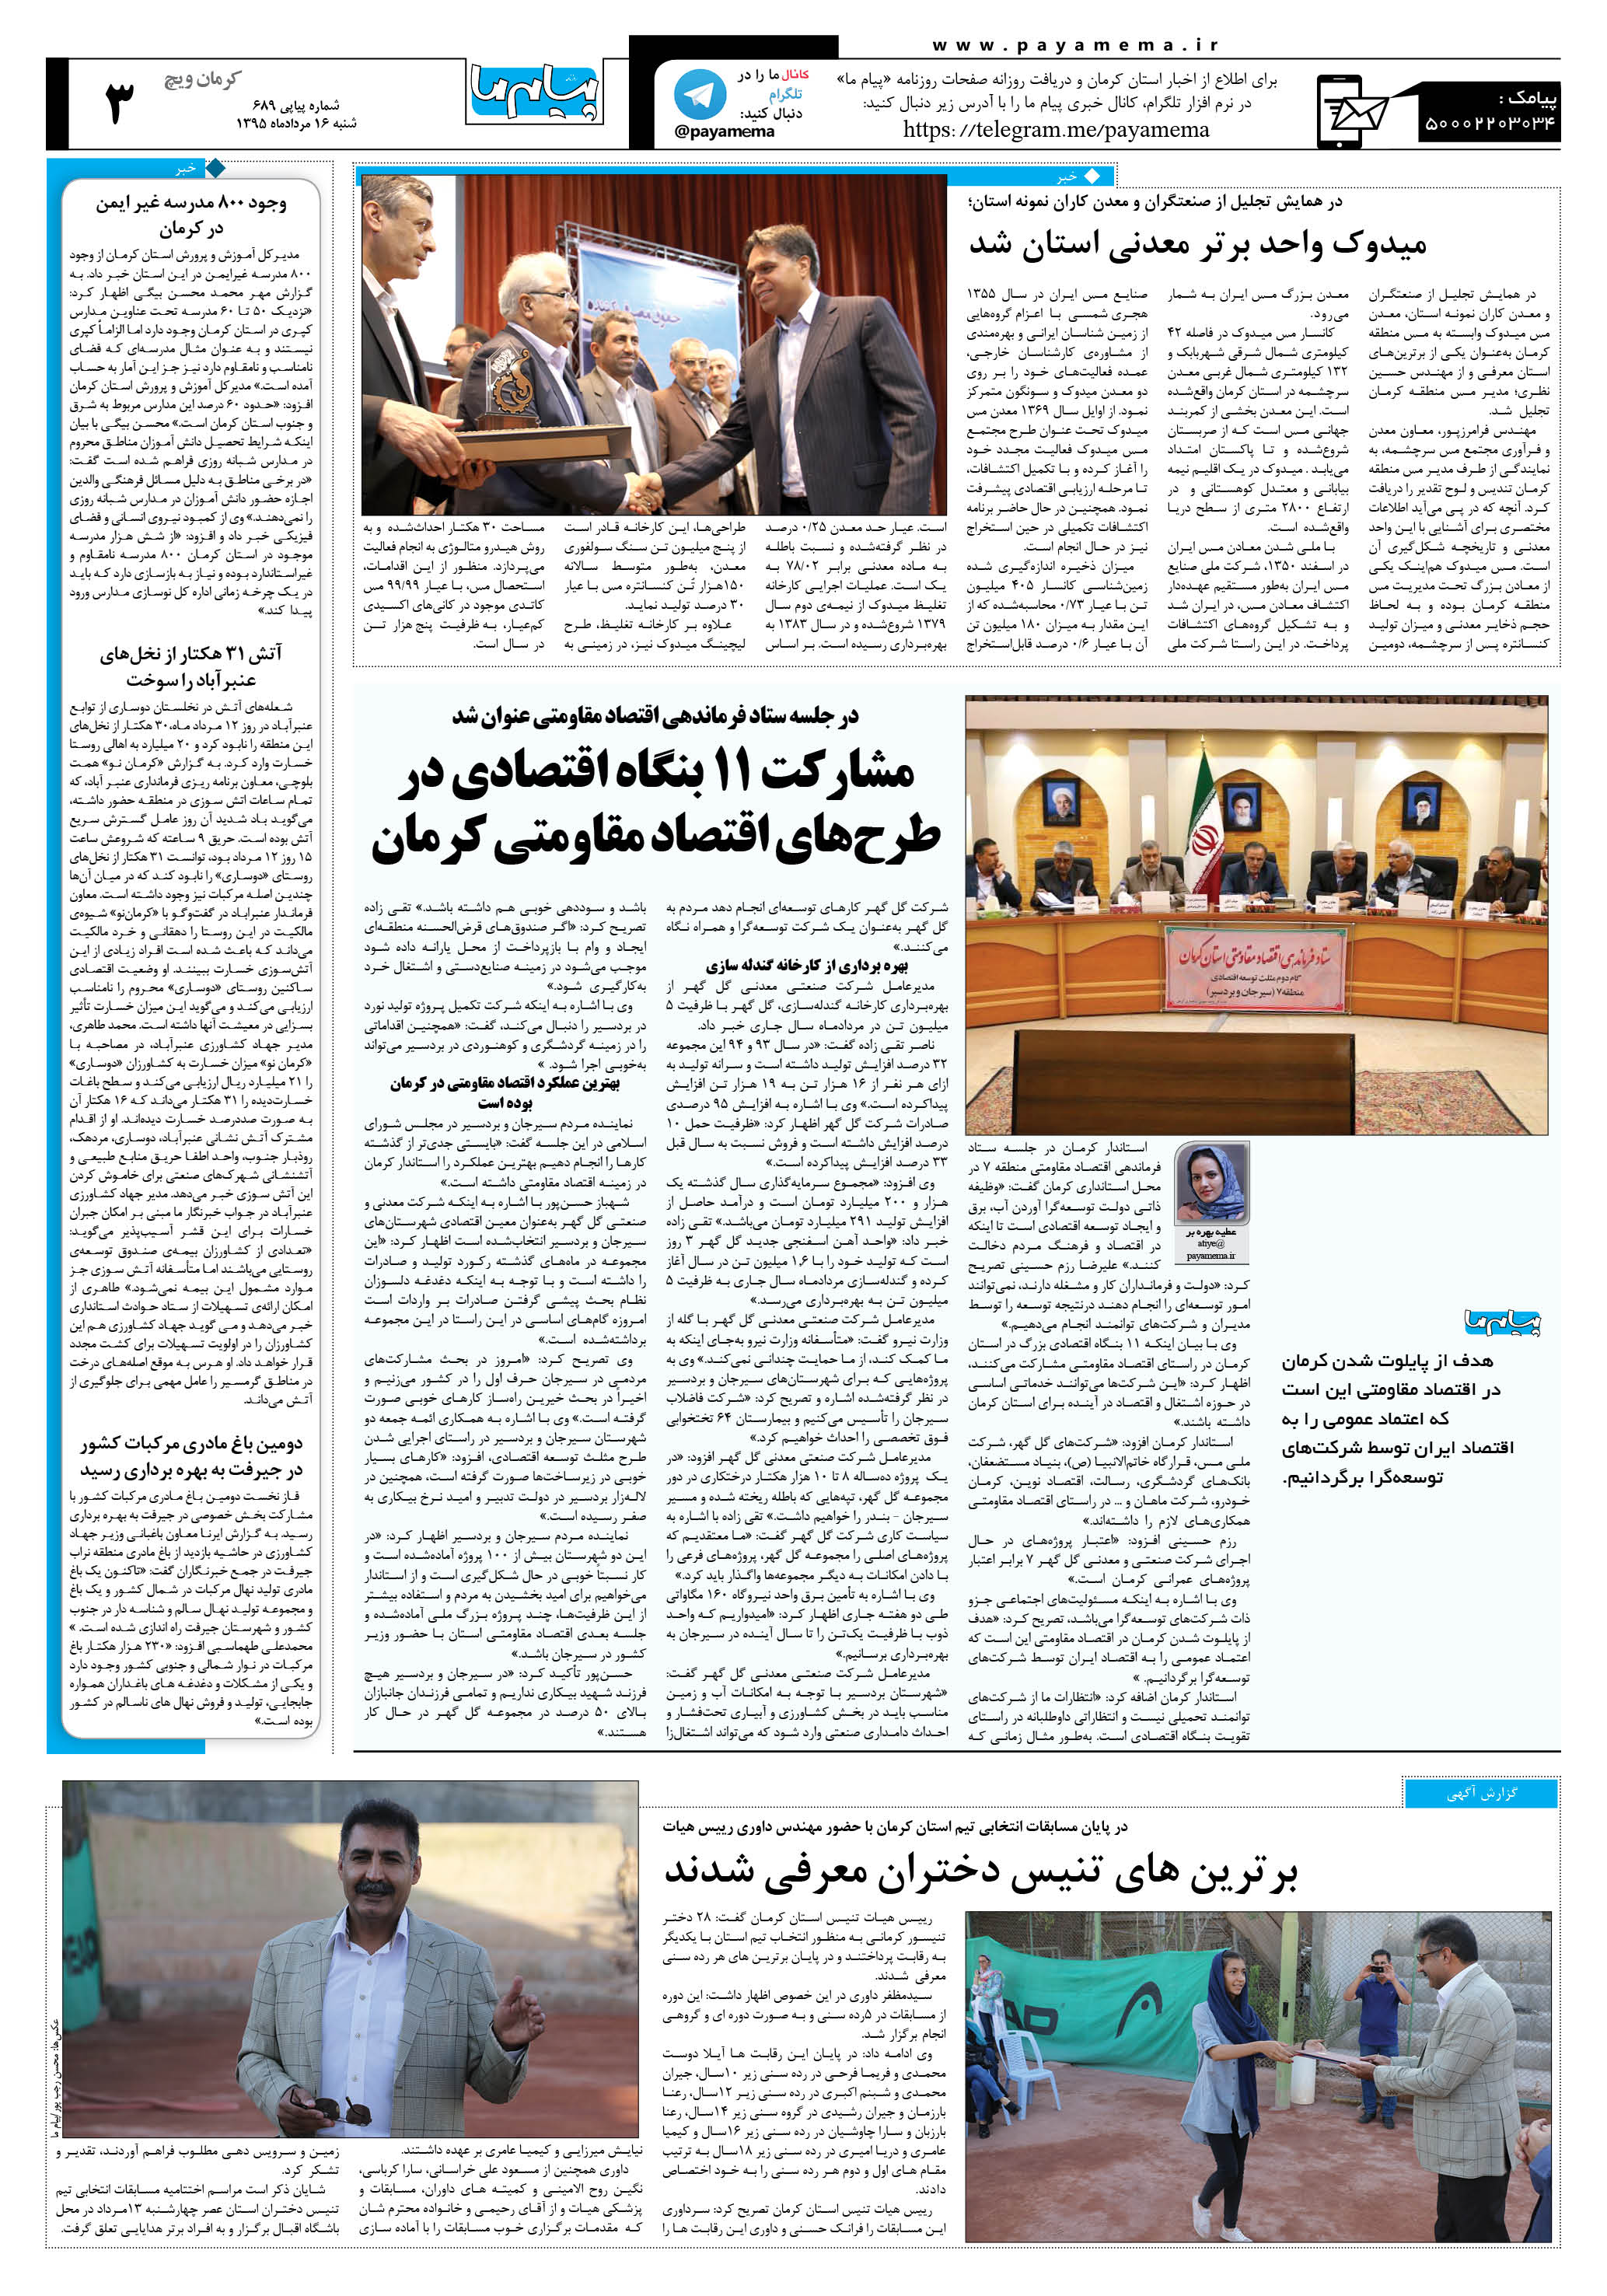 صفحه کرمان ویج شماره 689 روزنامه پیام ما